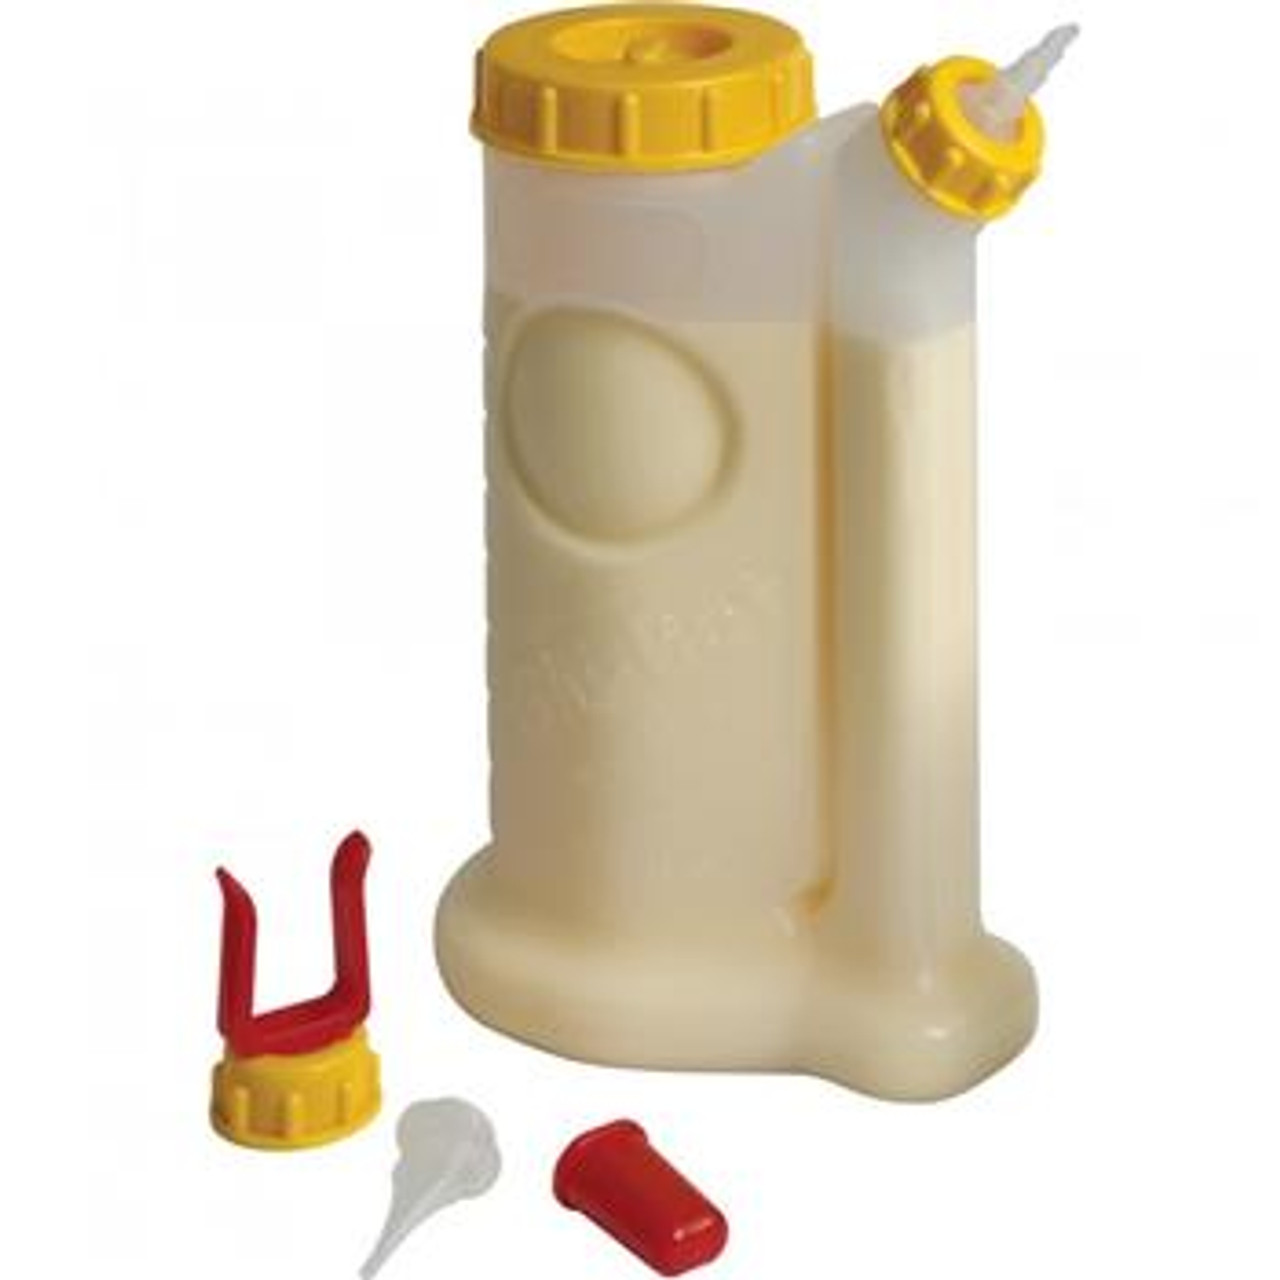 Fastcap-BabeBot 4 Oz Glue Bottle with 3 Tips-GB.BABEBOT